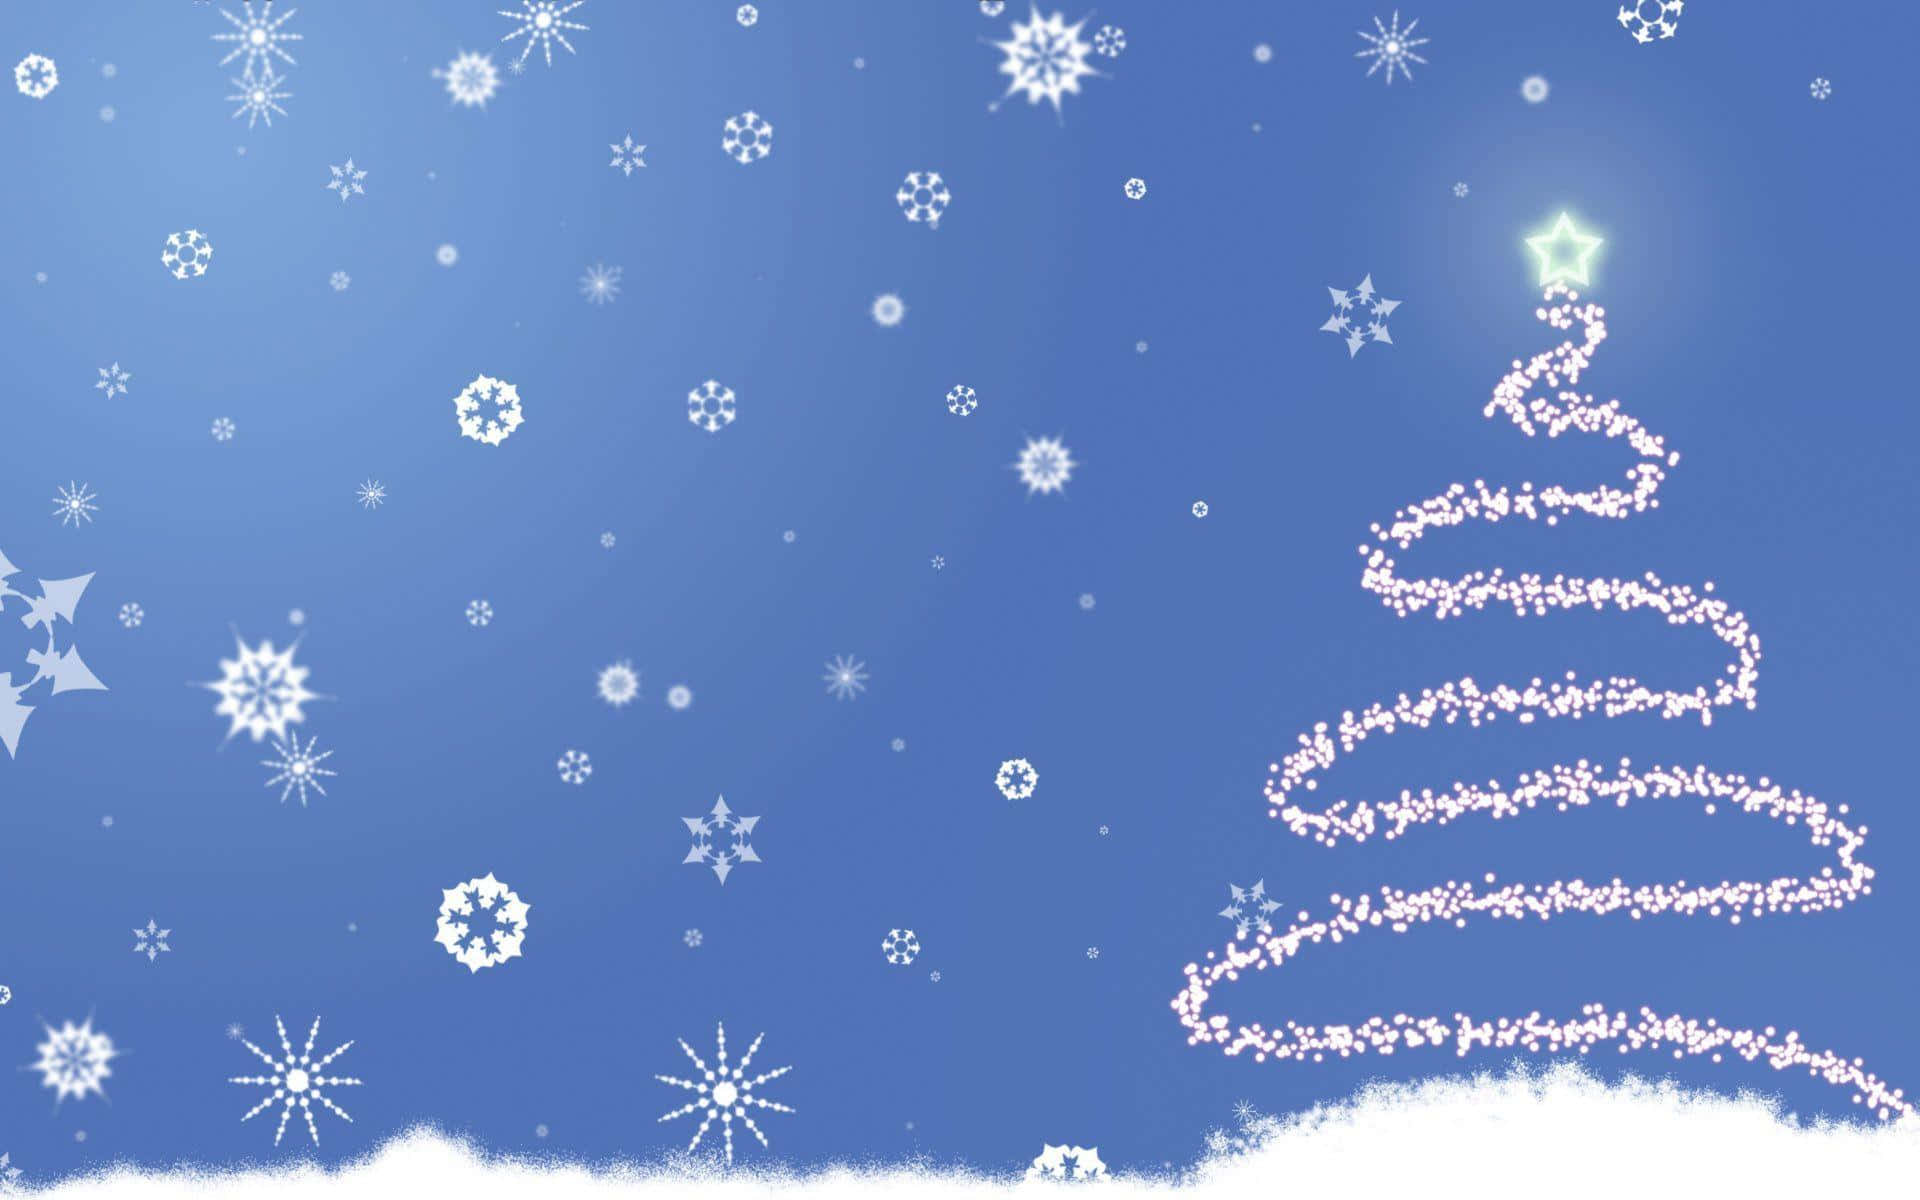 Fondotemático De Navidad Azul Con Copos De Nieve Y Árbol De Navidad.